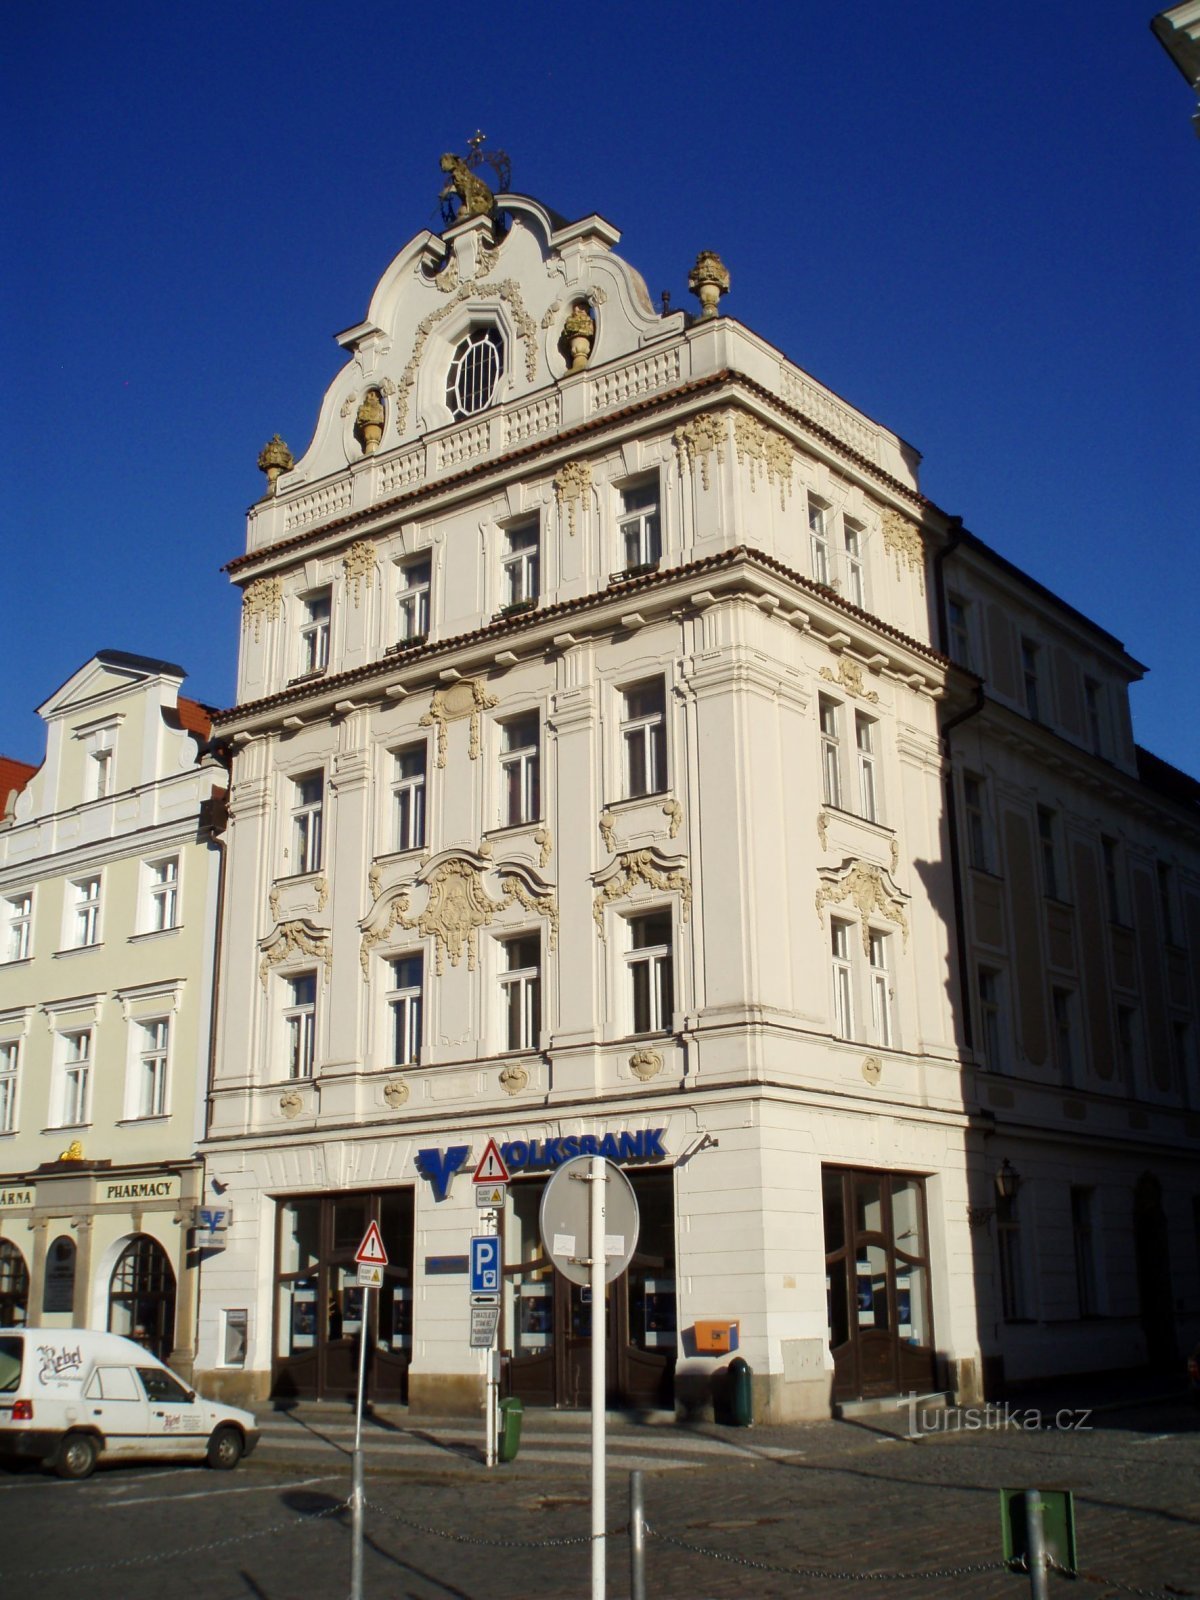 Velké náměstí nr. 30 (Hradec Králové, 25.4.2012. oktober XNUMX)